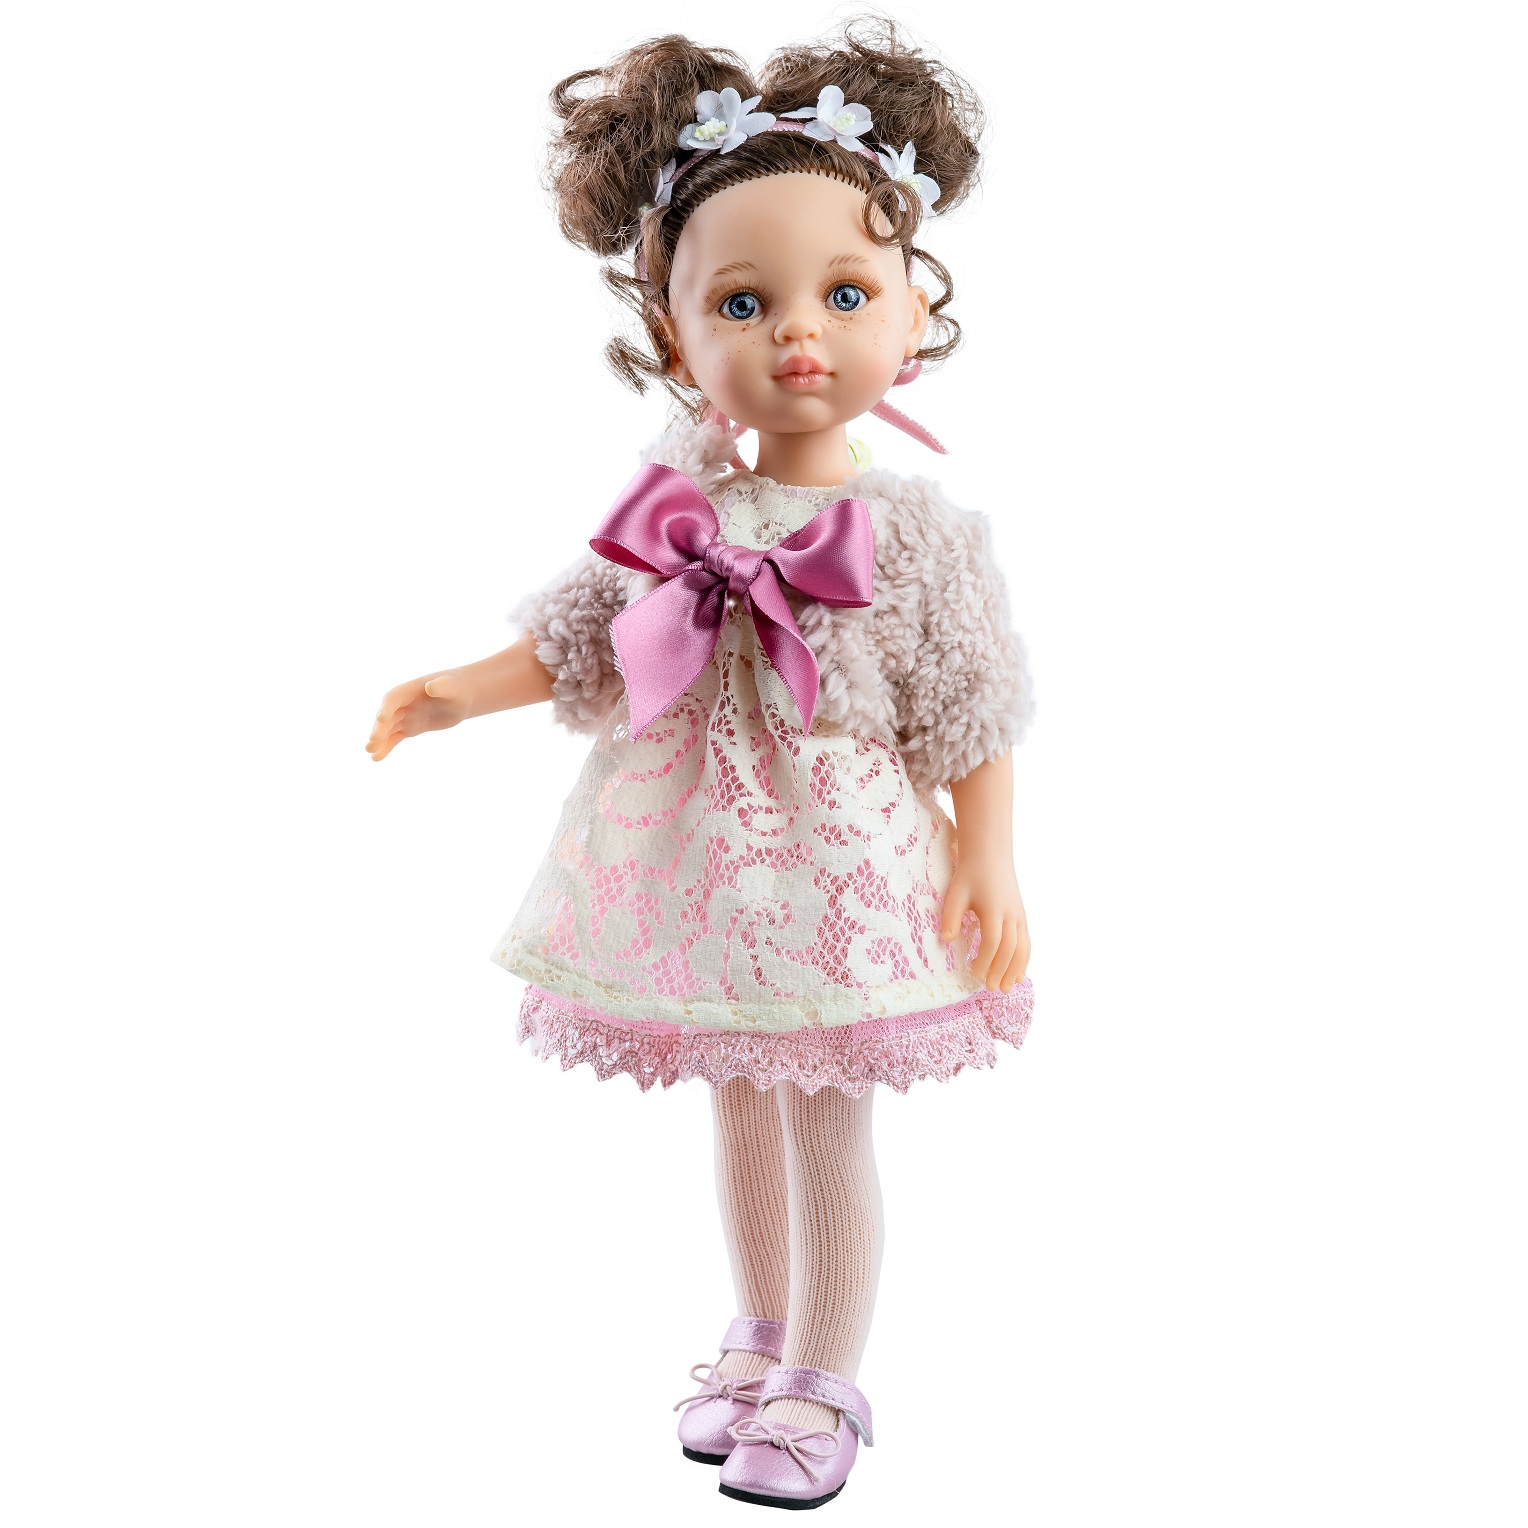 Одежда для кукол 32 см. Кукла Паола Рейна. Кукла Паола Рейна Кэрол. Испанские куклы Паола Рейна. Кукла Паола Рейна 32.